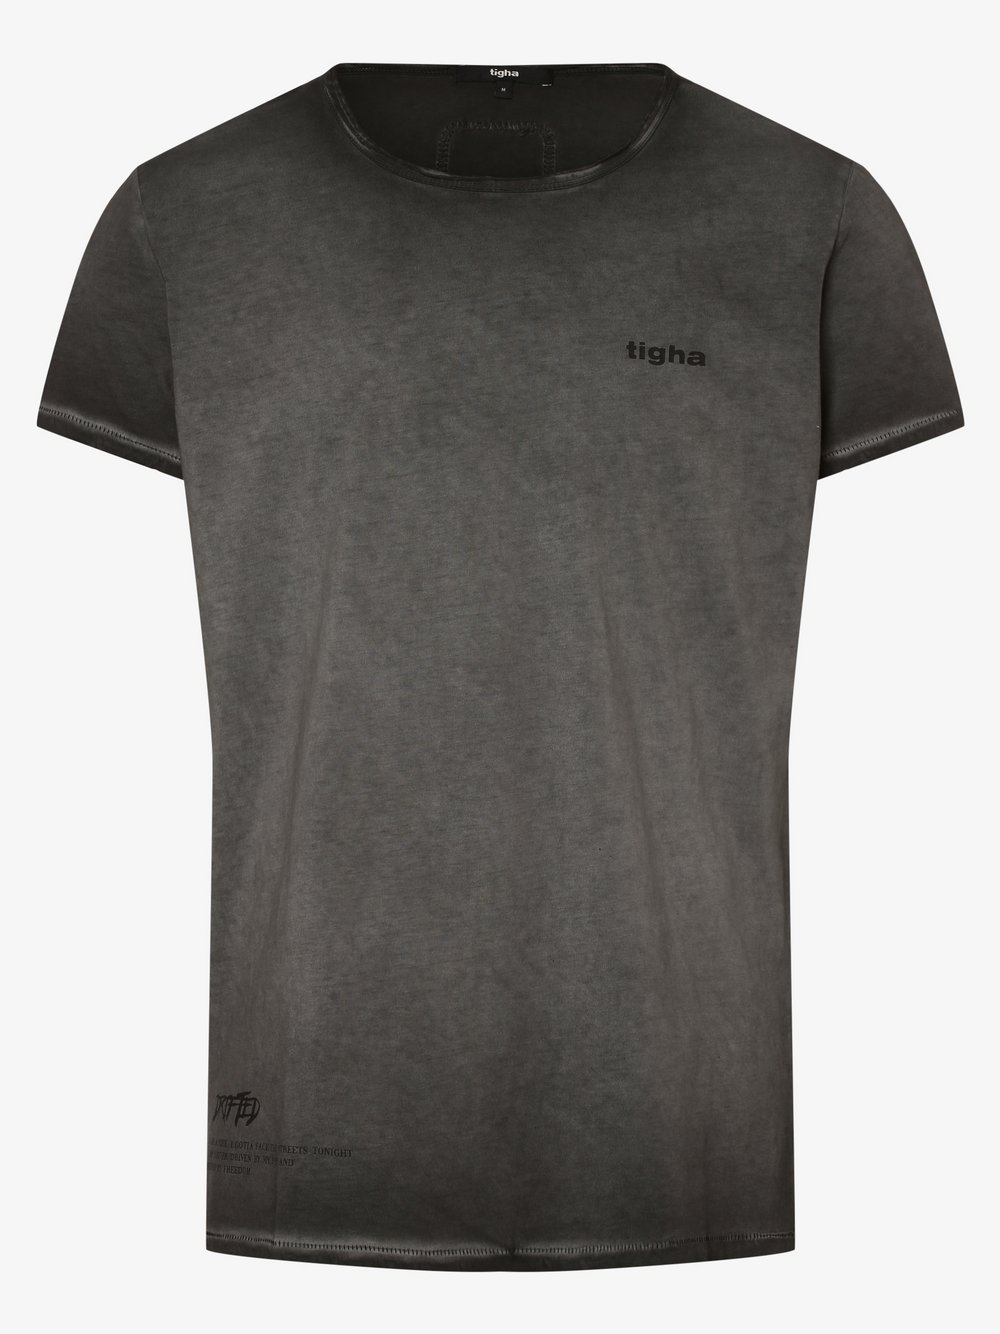 Tigha - T-shirt męski – Vadik, czarny